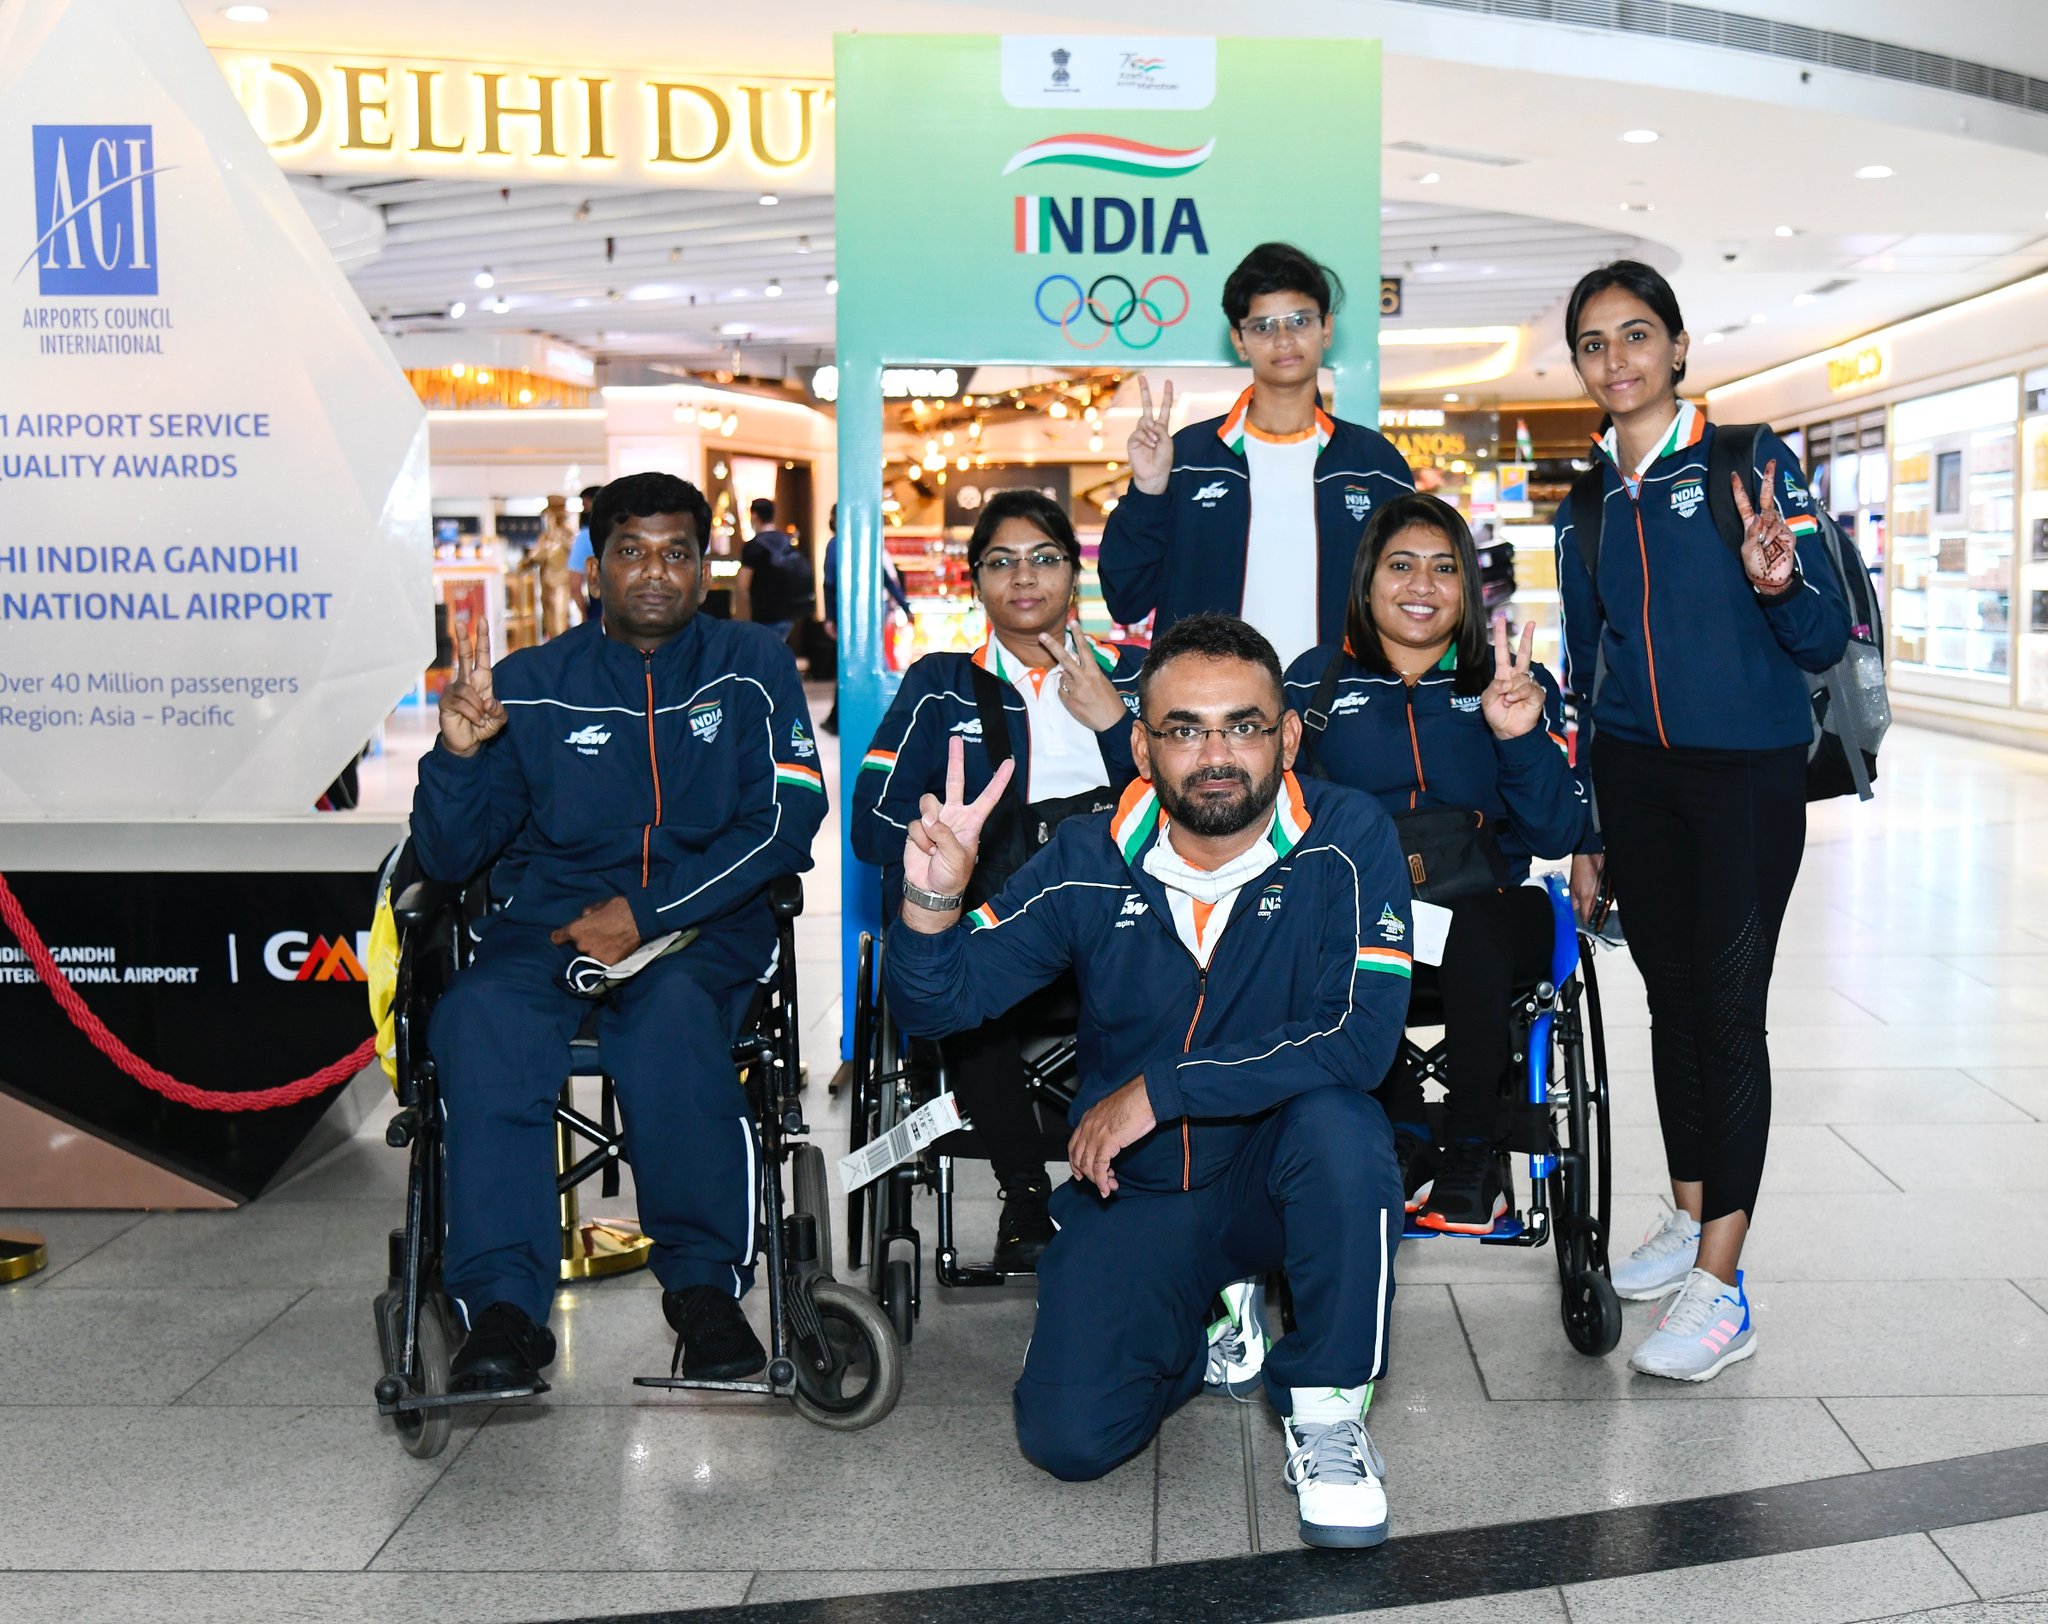 भारताची पॅरा-टेबल टेनिस टीमने पदक मिळवण्याचा विश्वास व्यक्त केला आहे.(सर्व फोटो सौजन्य - ट्विटर आणि पीटीआय)